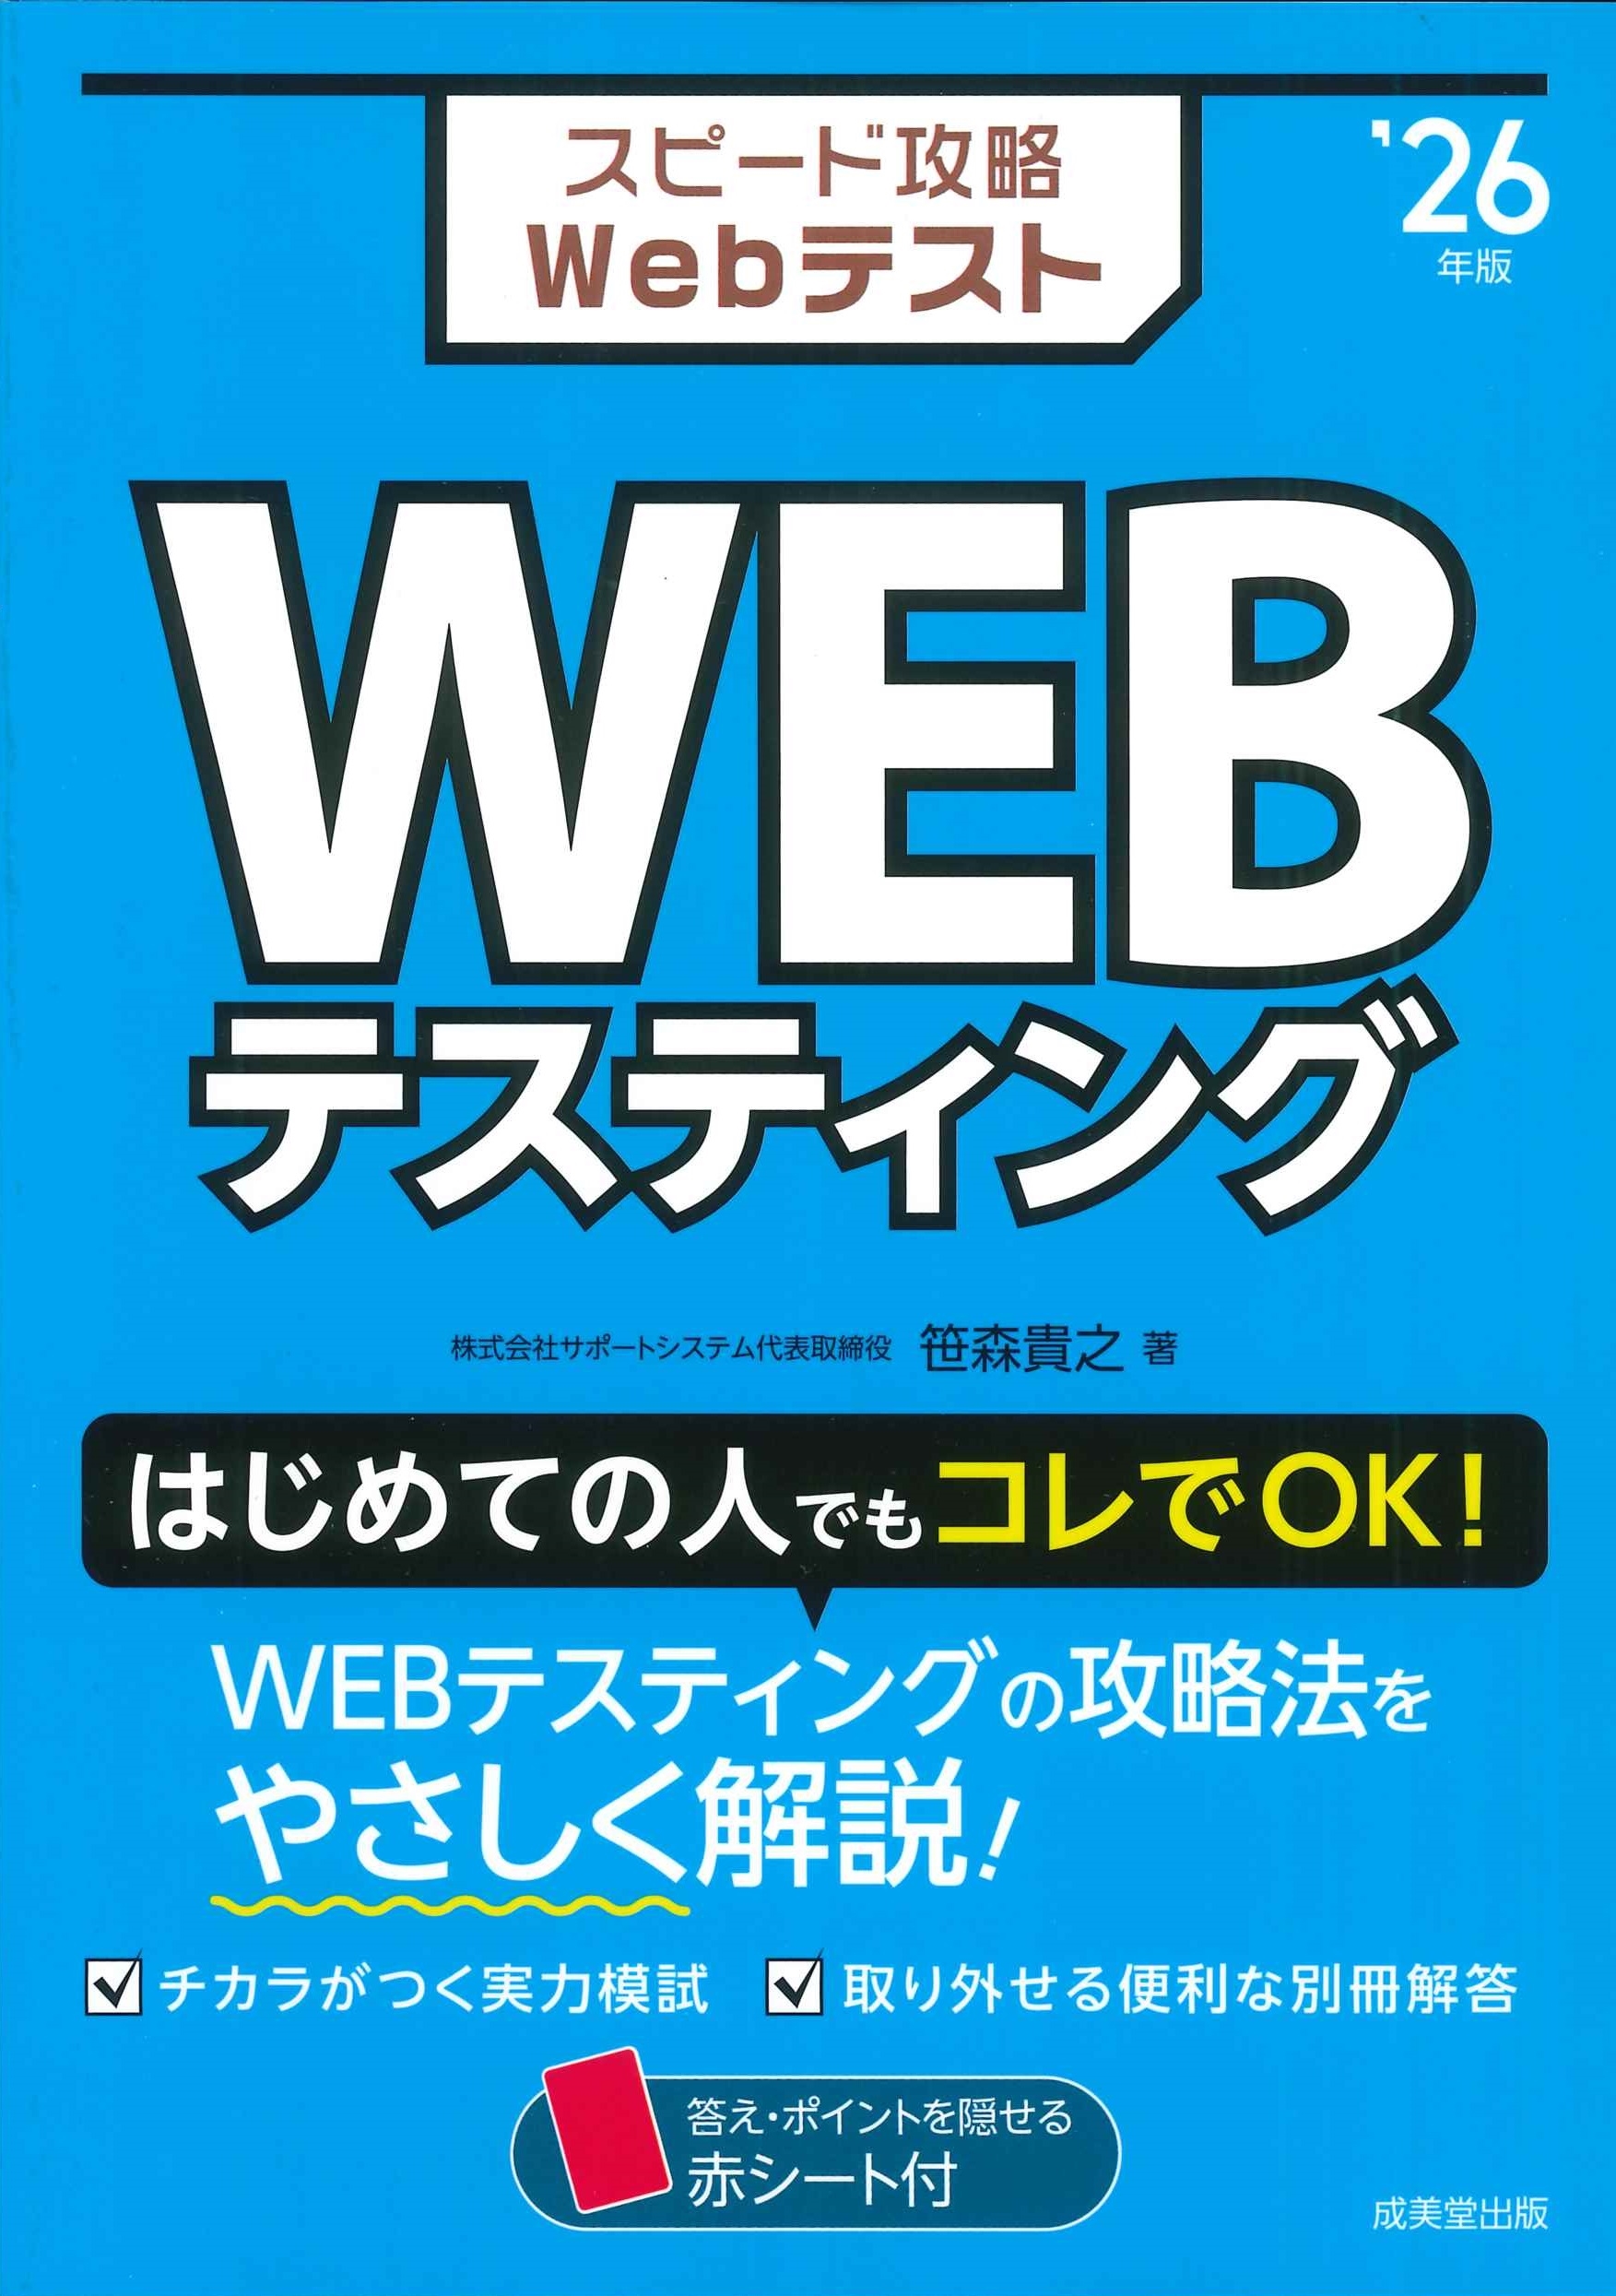 笹森貴之/スピード攻略Webテスト WEBテスティング '26年版